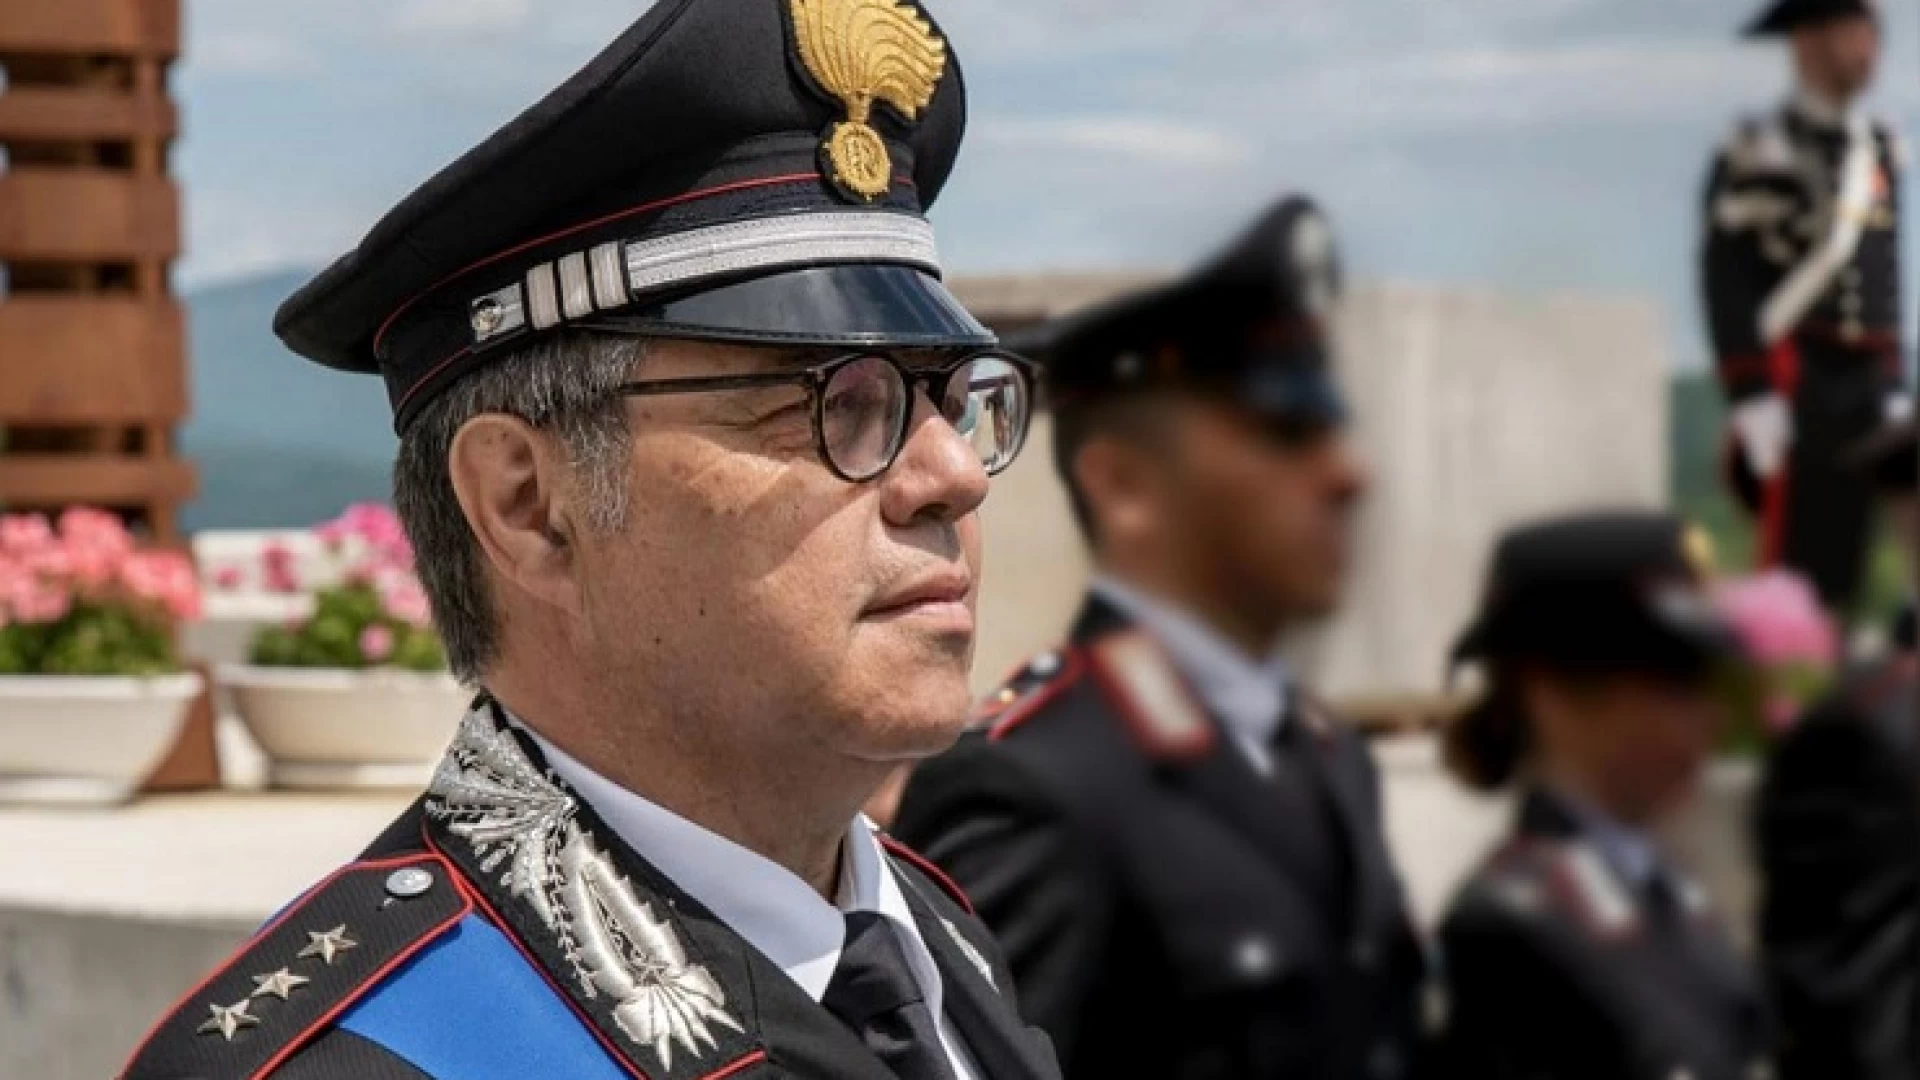 Carabinieri: il capitano Macchiarella collocato in pensione per raggiunti limiti di età.